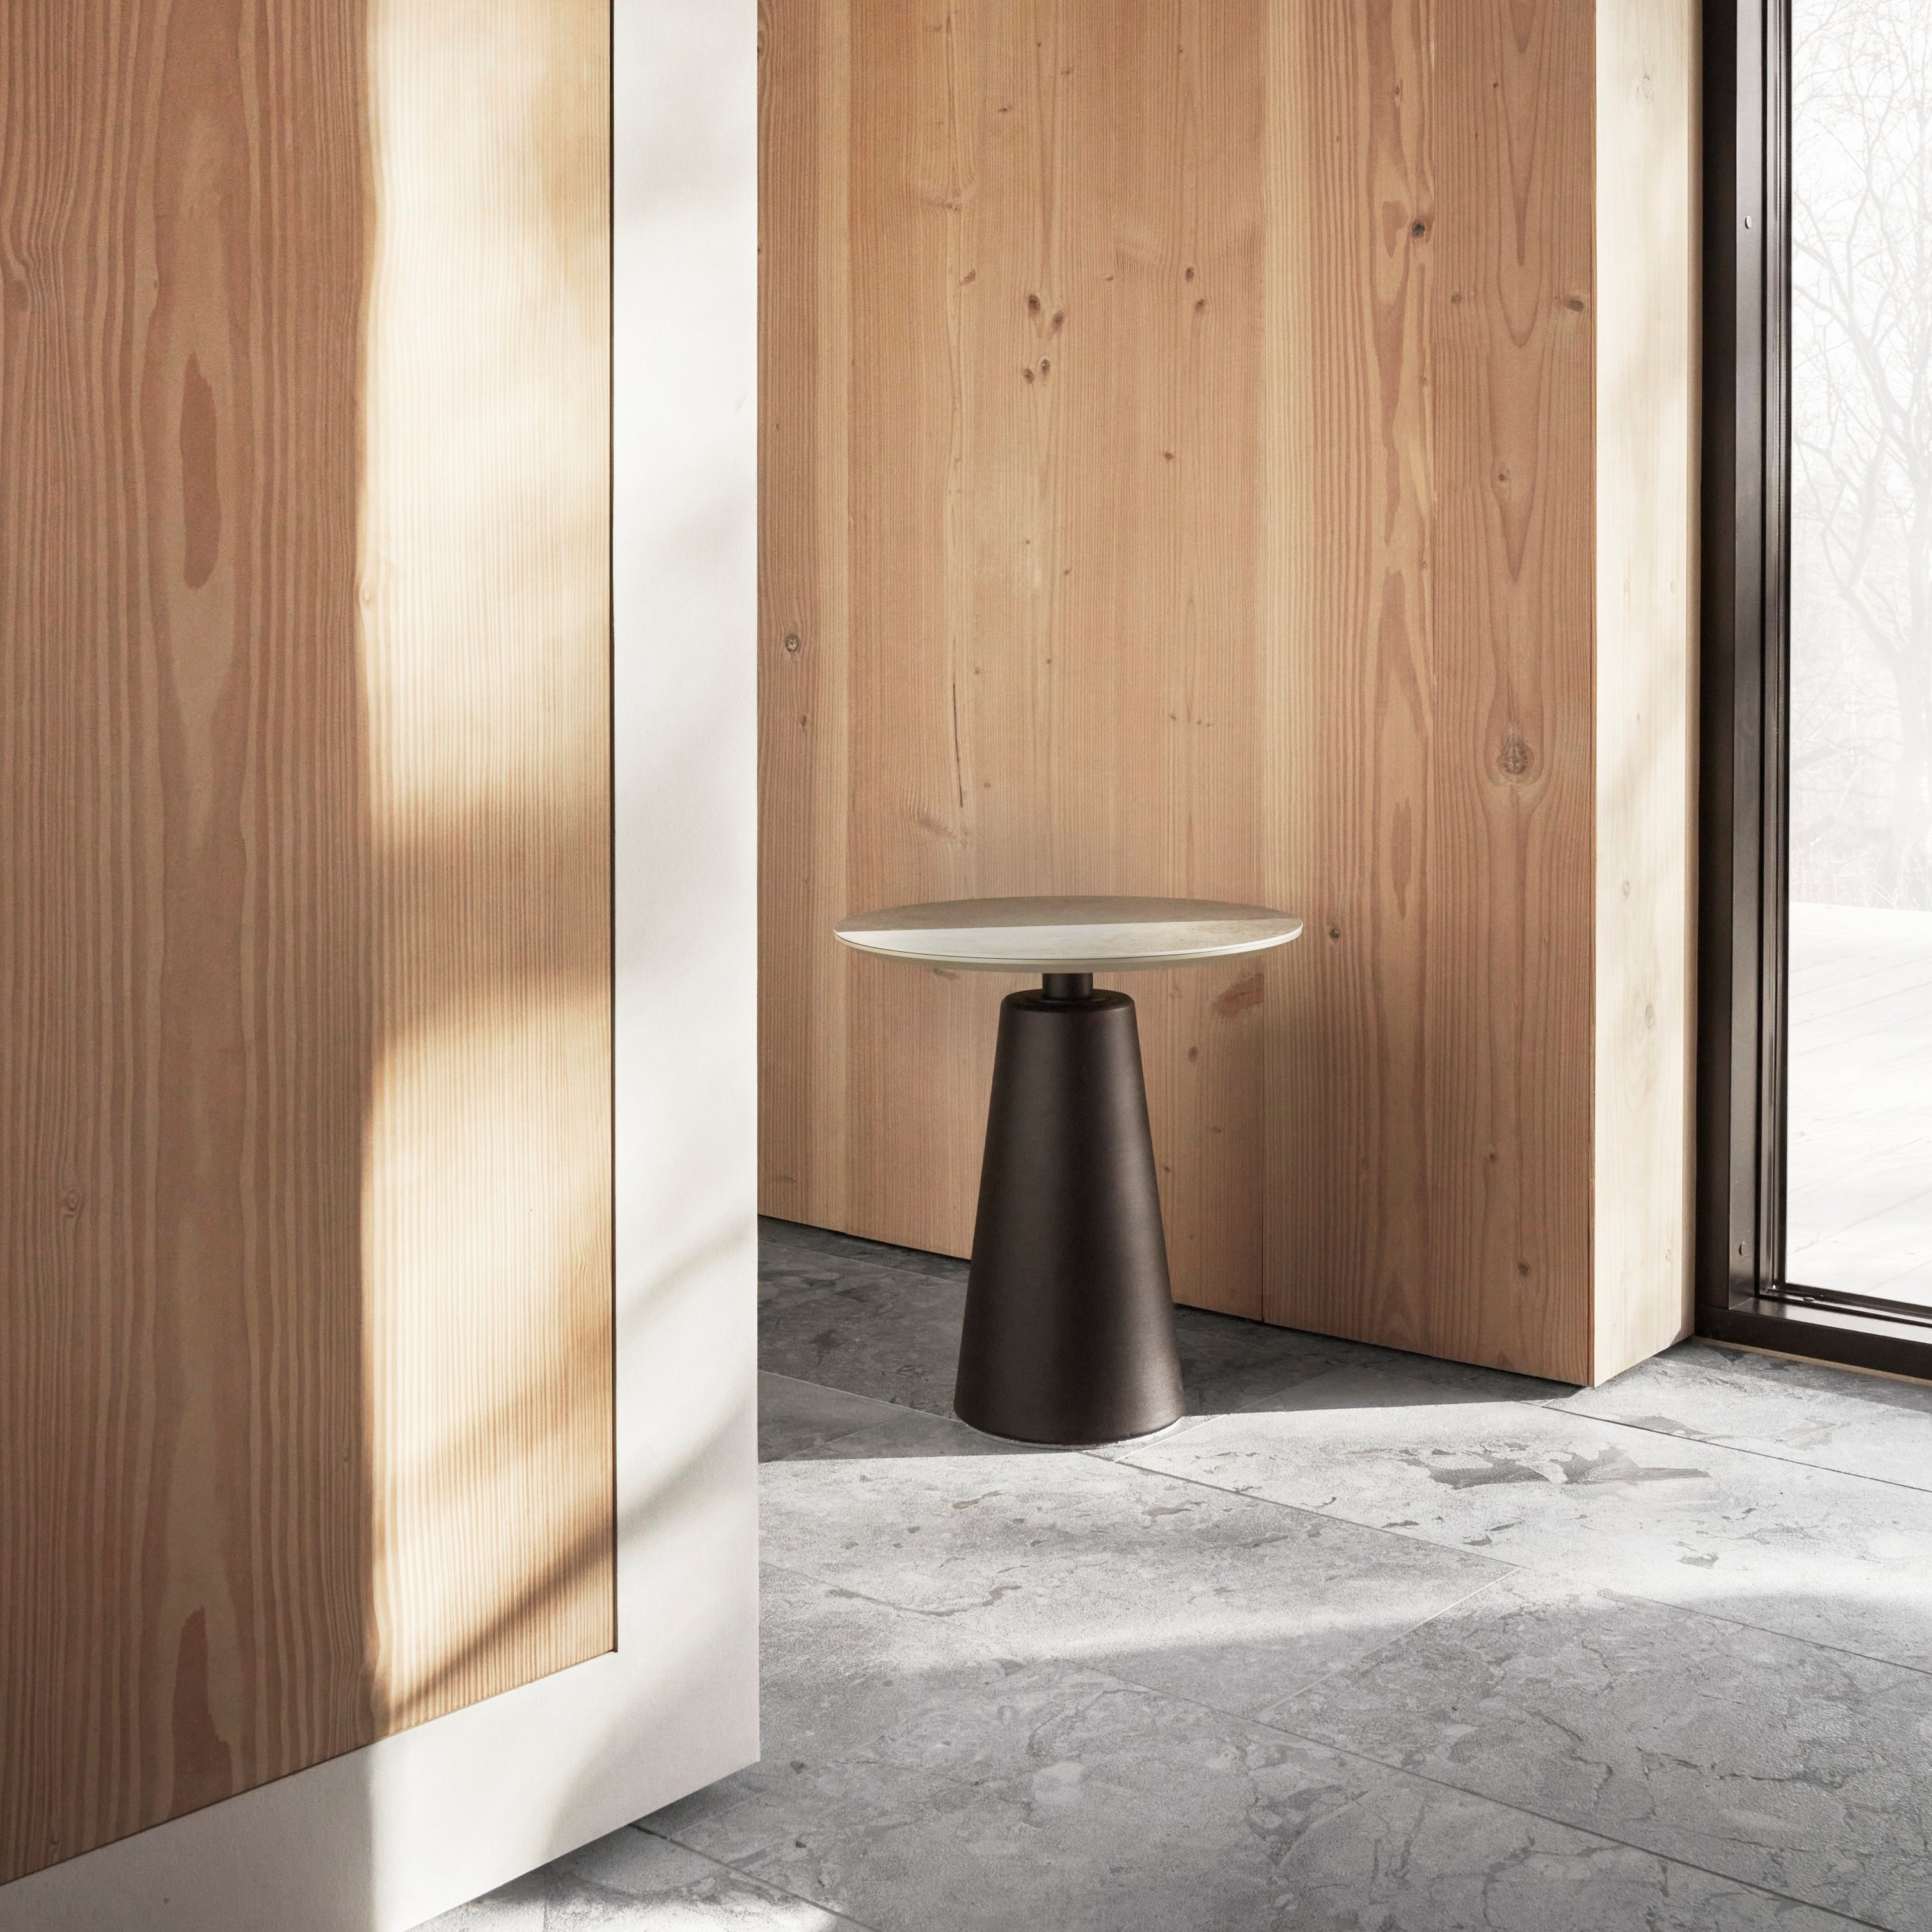 Espacio minimalista con paredes de madera, una sencilla mesa auxiliar y luz natural a través de grandes ventanales.